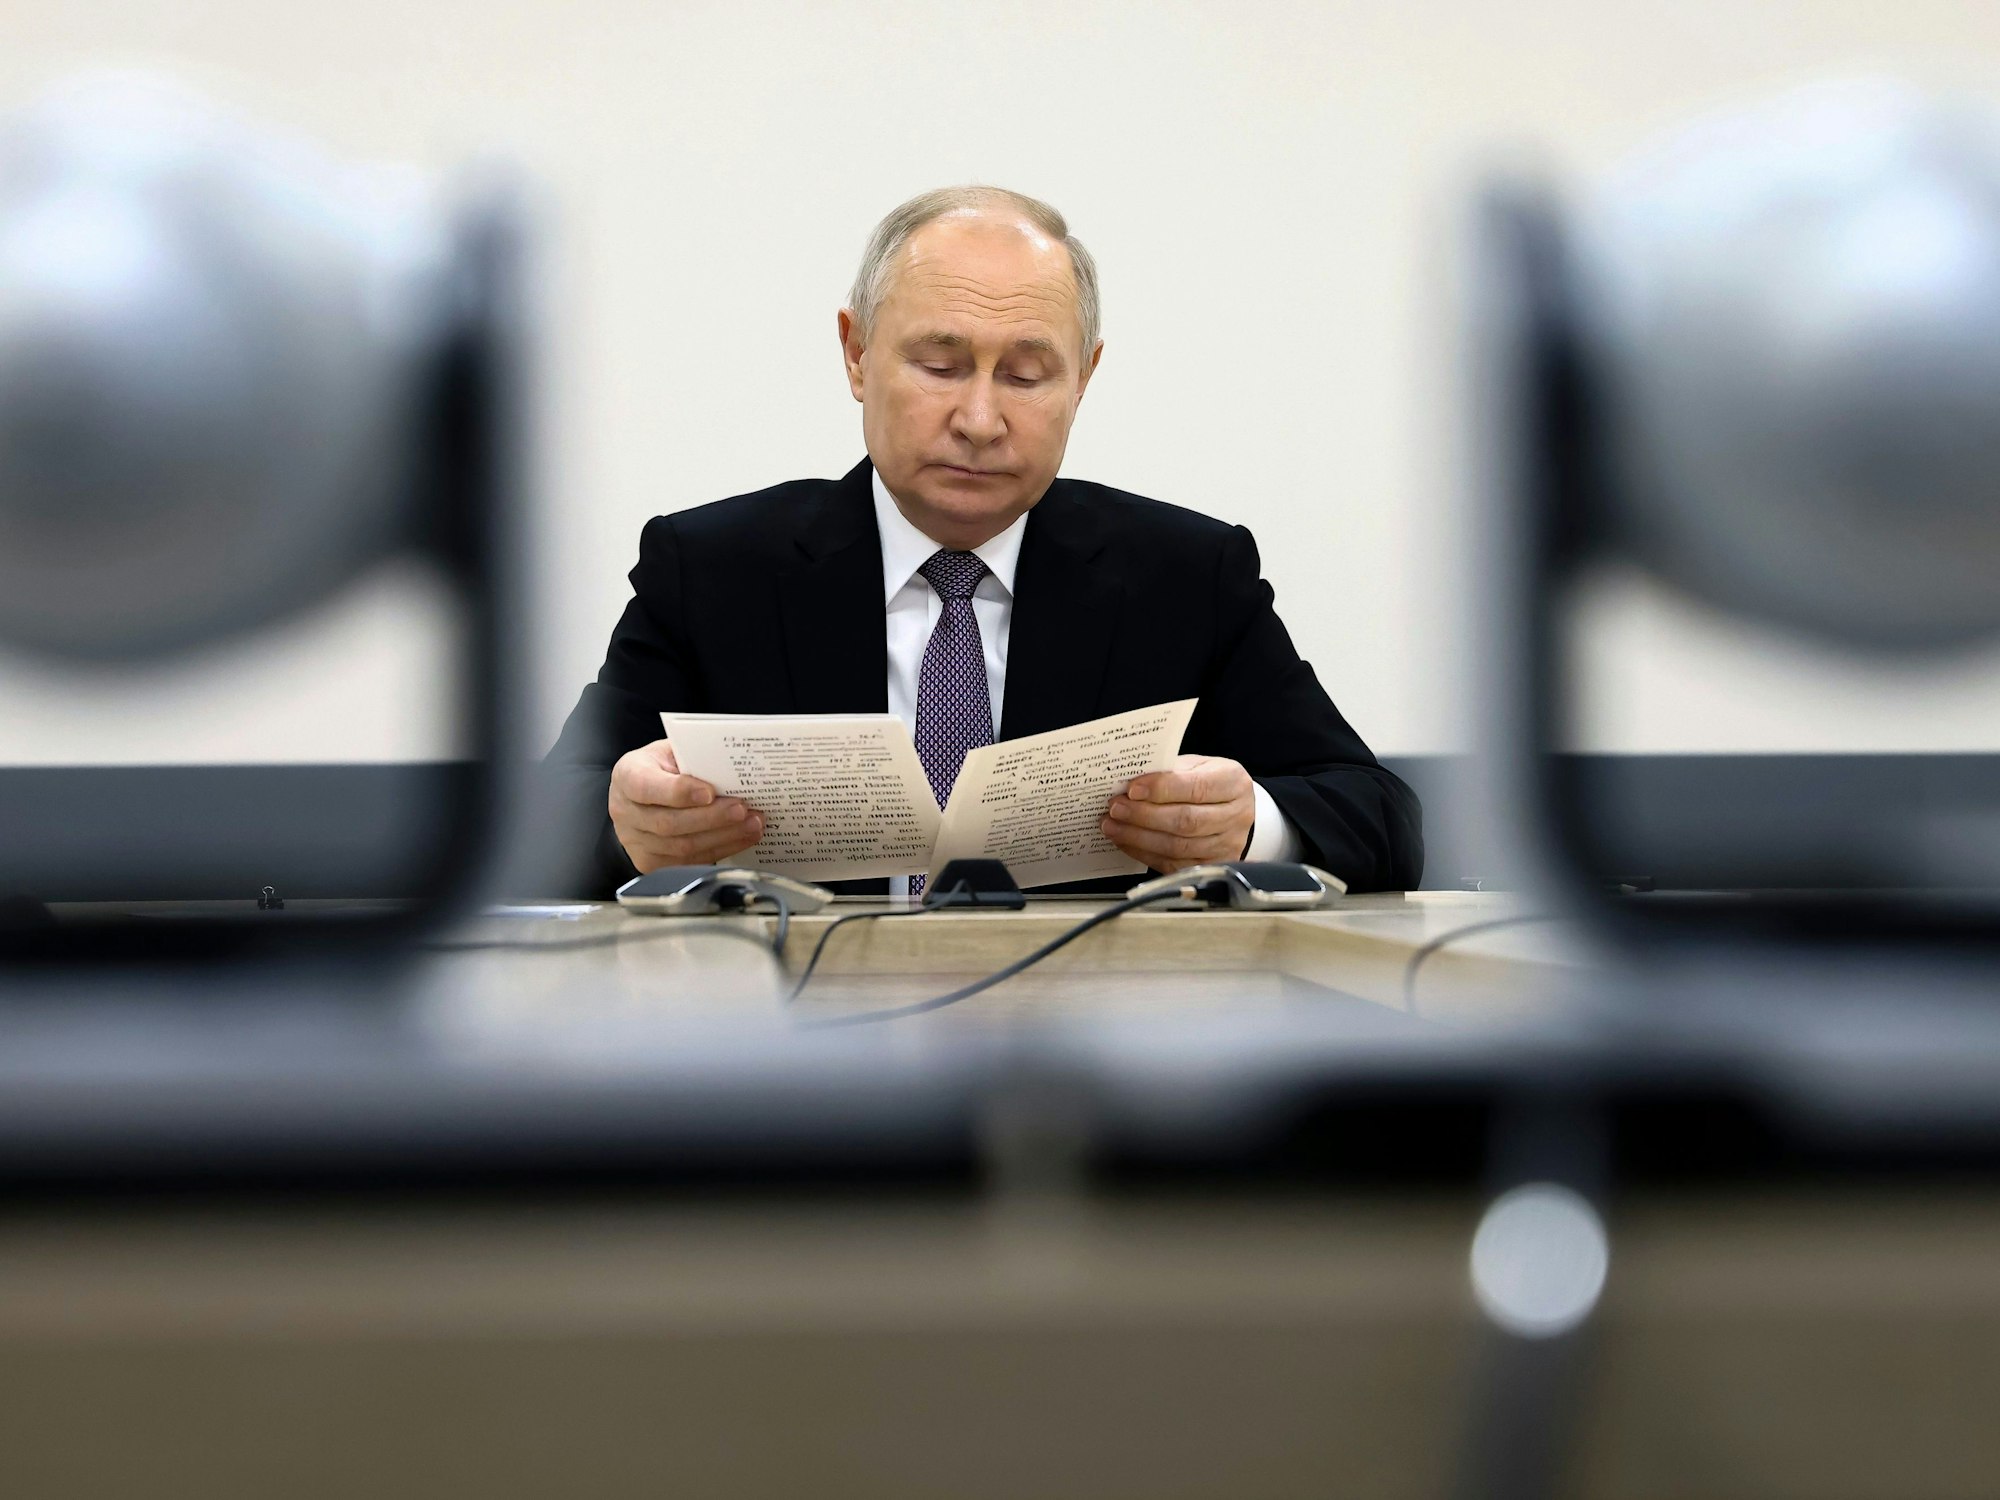 Der russische Präsident Wladimir Putin spricht am 2. Februar während eines Treffens im russischen Tula.